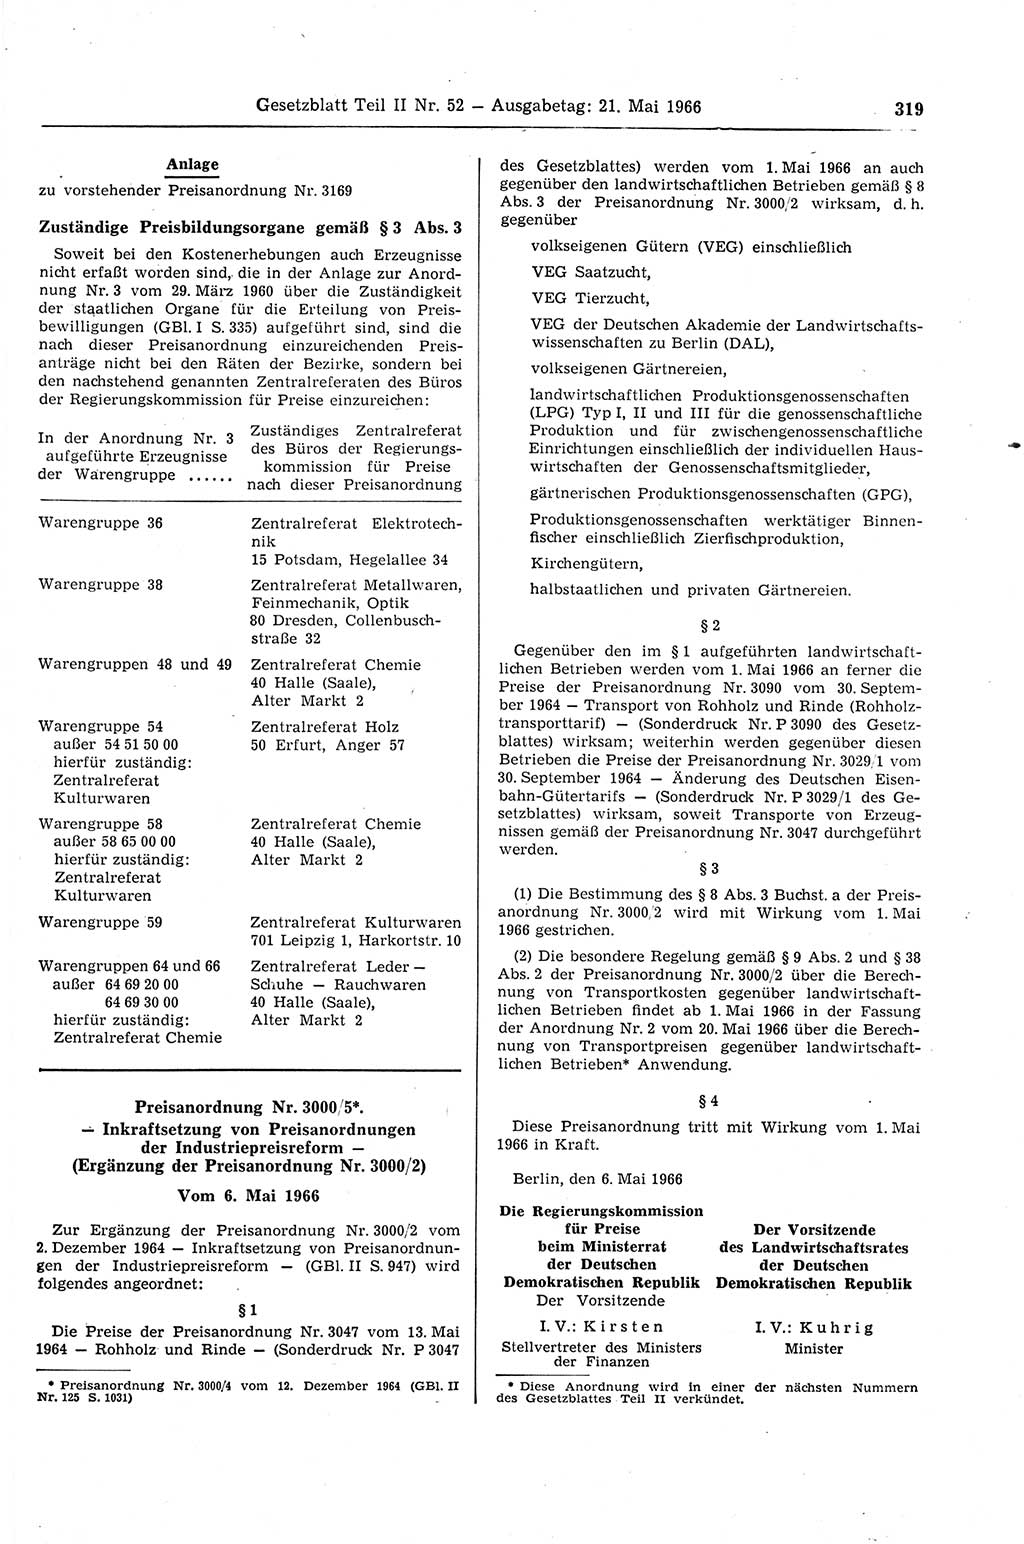 Gesetzblatt (GBl.) der Deutschen Demokratischen Republik (DDR) Teil ⅠⅠ 1966, Seite 319 (GBl. DDR ⅠⅠ 1966, S. 319)